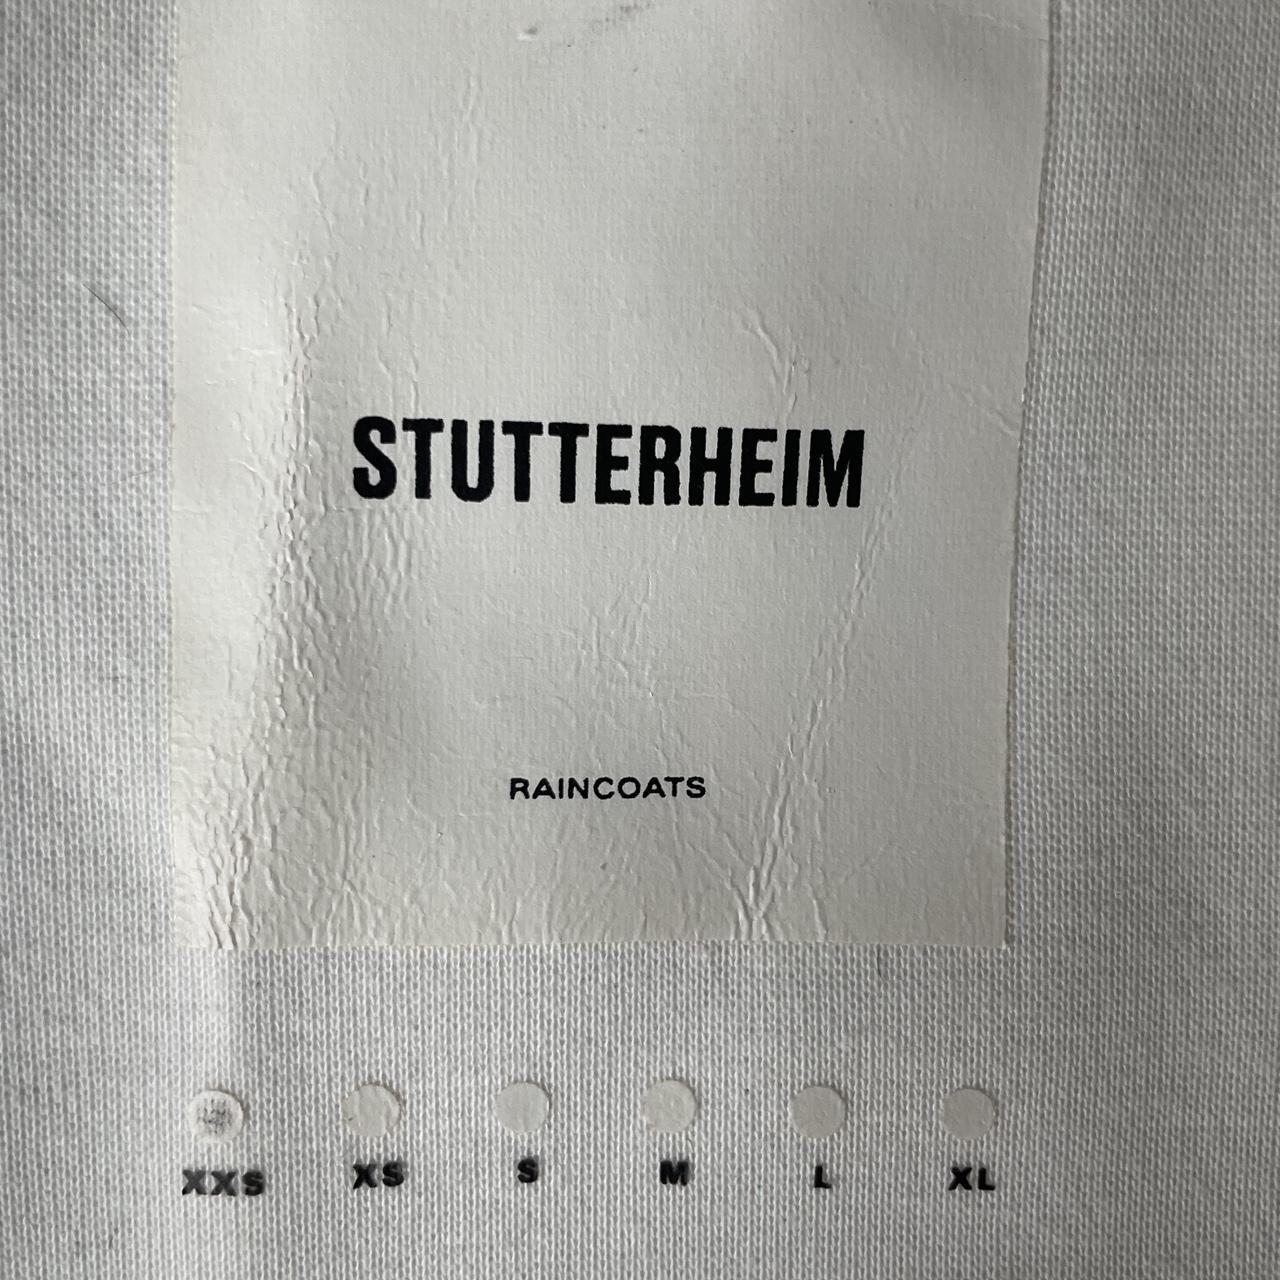 Product Image 3 - Stutterheim Raincoat. Tri-color. So cute